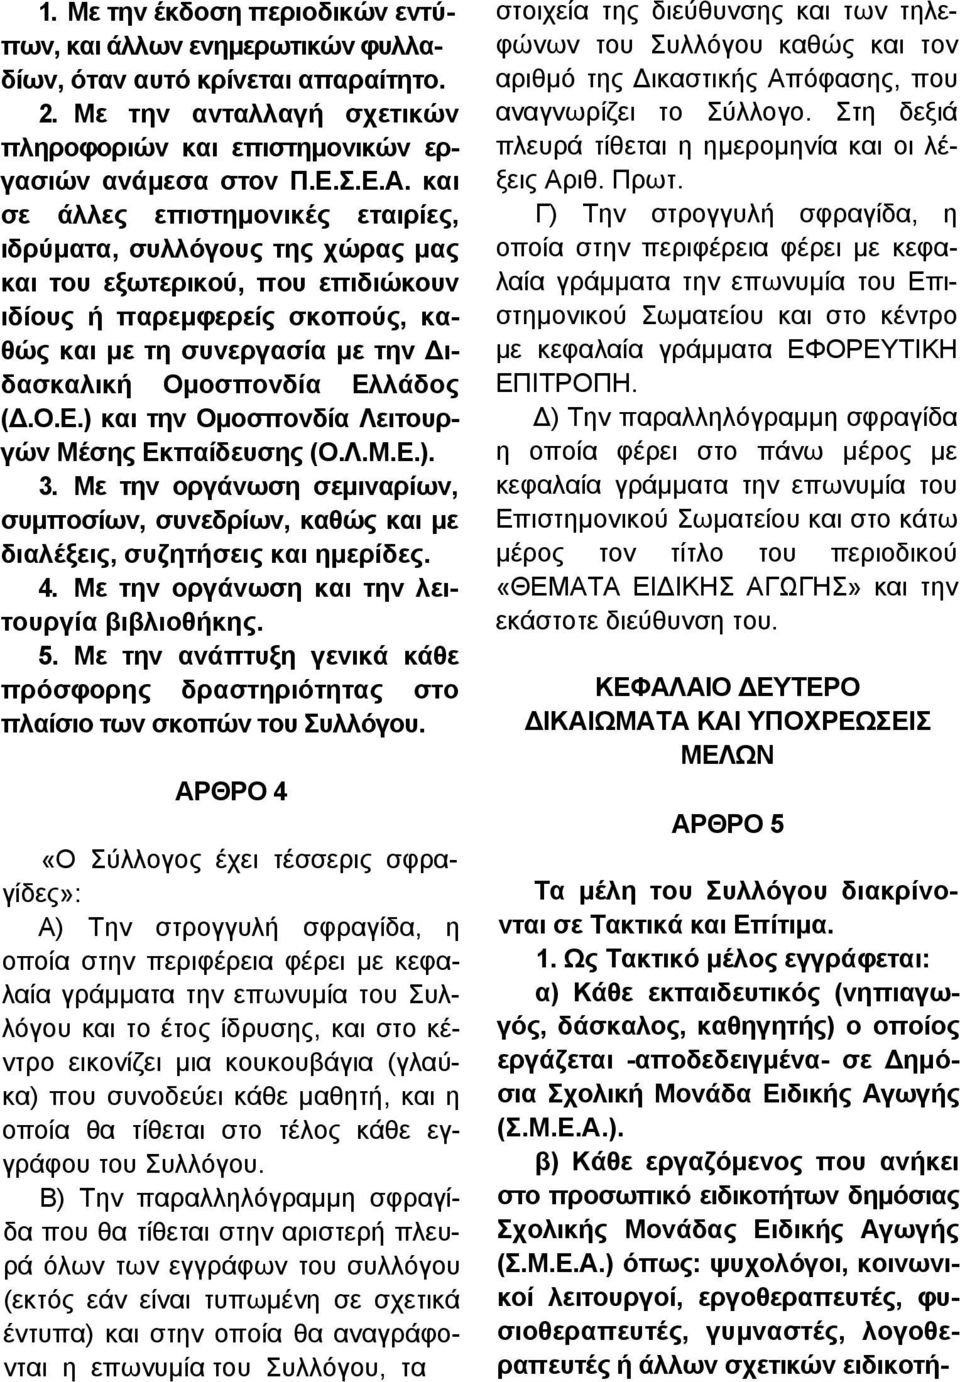 Ελλάδος (Δ.Ο.Ε.) και την Ομοσπονδία Λειτουργών Μέσης Εκπαίδευσης (Ο.Λ.Μ.Ε.). 3. Με την οργάνωση σεμιναρίων, συμποσίων, συνεδρίων, καθώς και με διαλέξεις, συζητήσεις και ημερίδες. 4.